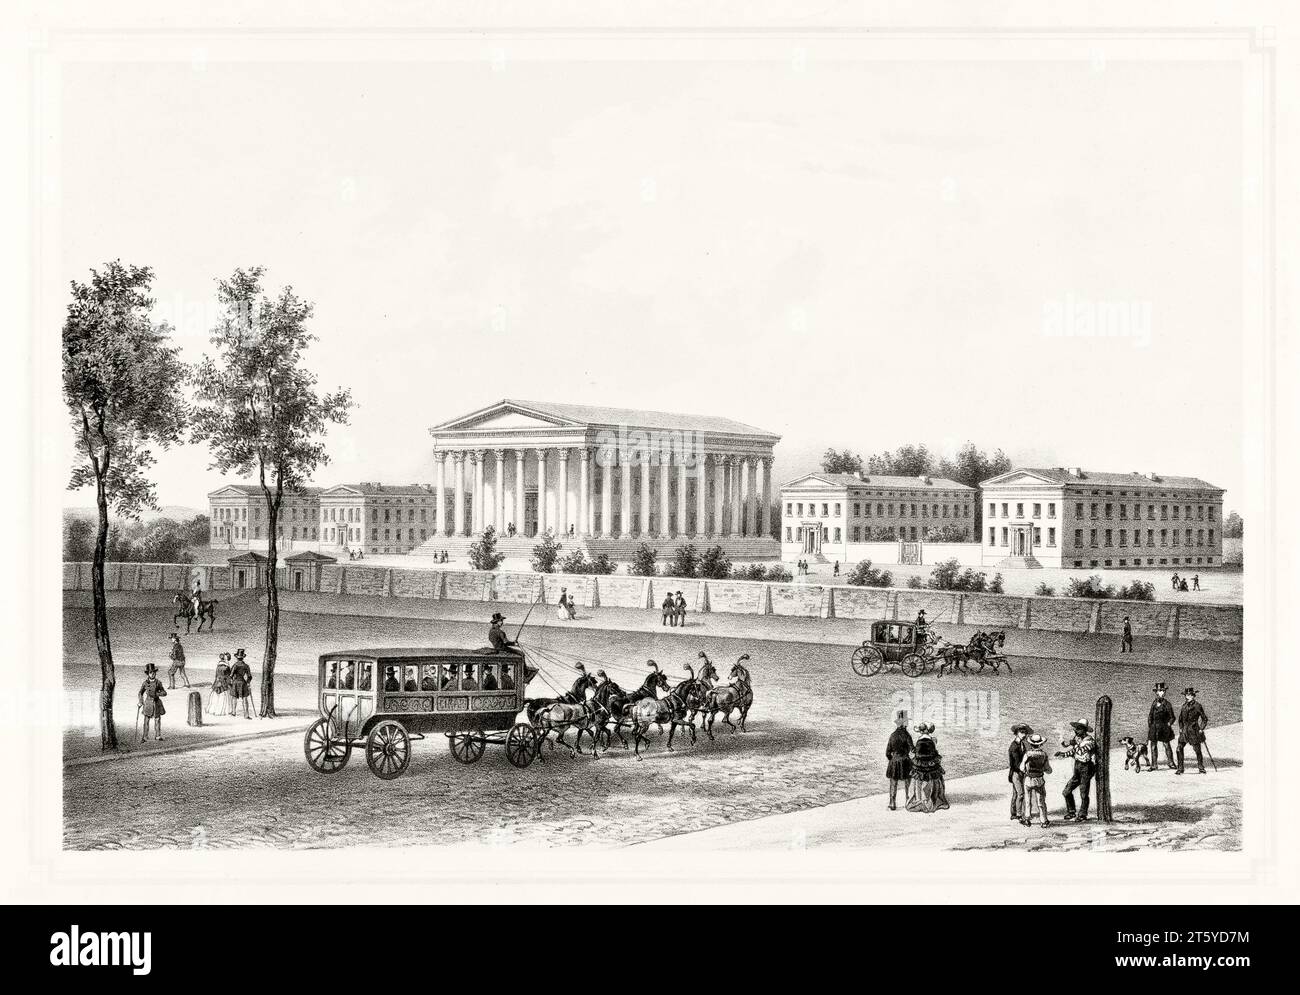 Alte Sicht auf das Girard College, Philadelphia, Pennsylvania. Vom unbekannten Autor, publ. CA. 1849 Stockfoto